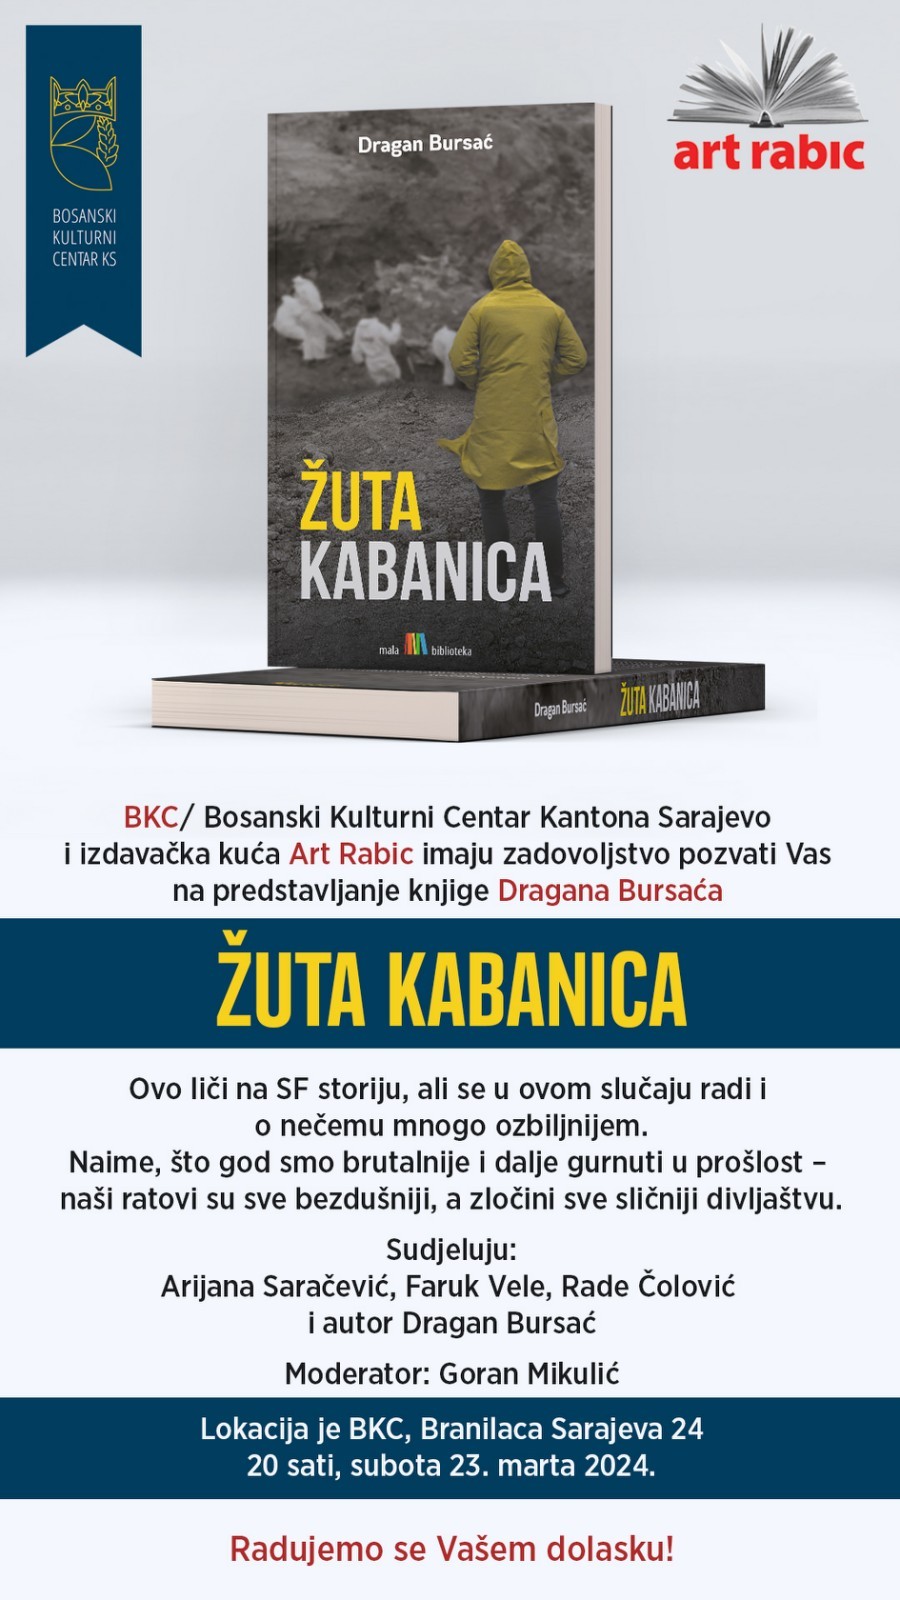 PROMOCIJA KNJIGE DRAGANA BURSAĆA “ŽUTA KABANICA” 23. 03. 2024.